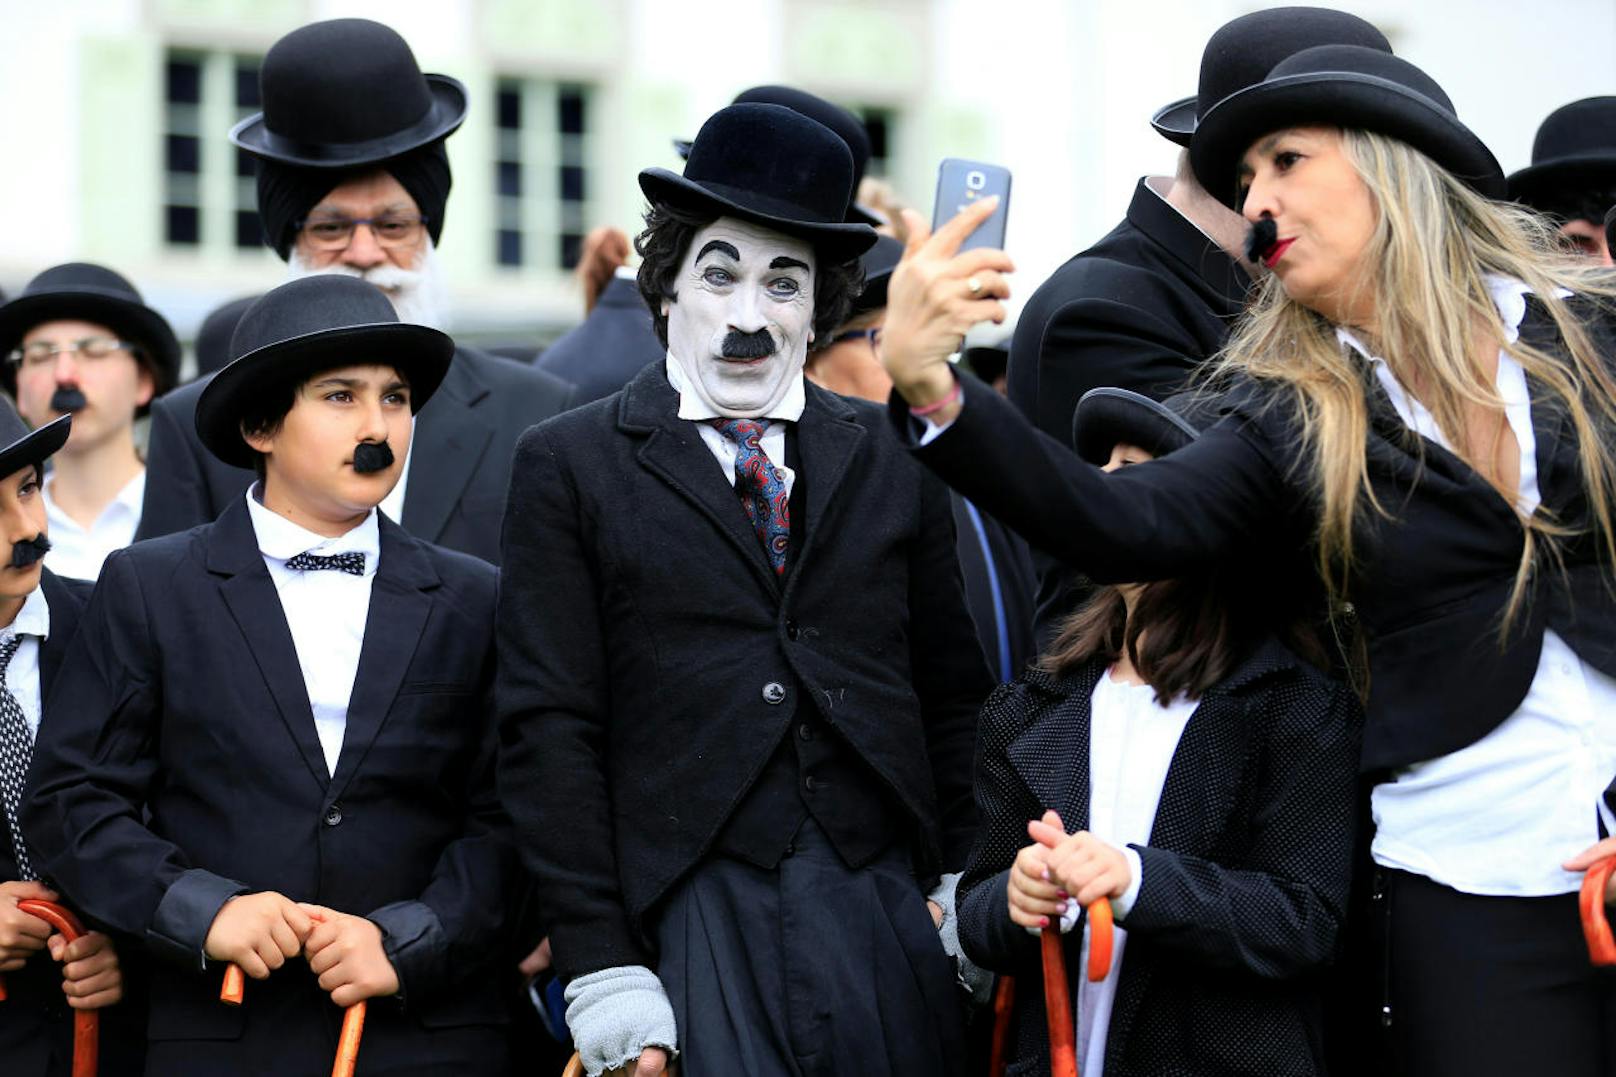 Museum Chaplin's World in Corsier-sur-Vevey am Genfer See: 662 Charlie Chaplin-Fans in Verkleidung - Weltrekord am Geburtstag der Ikone